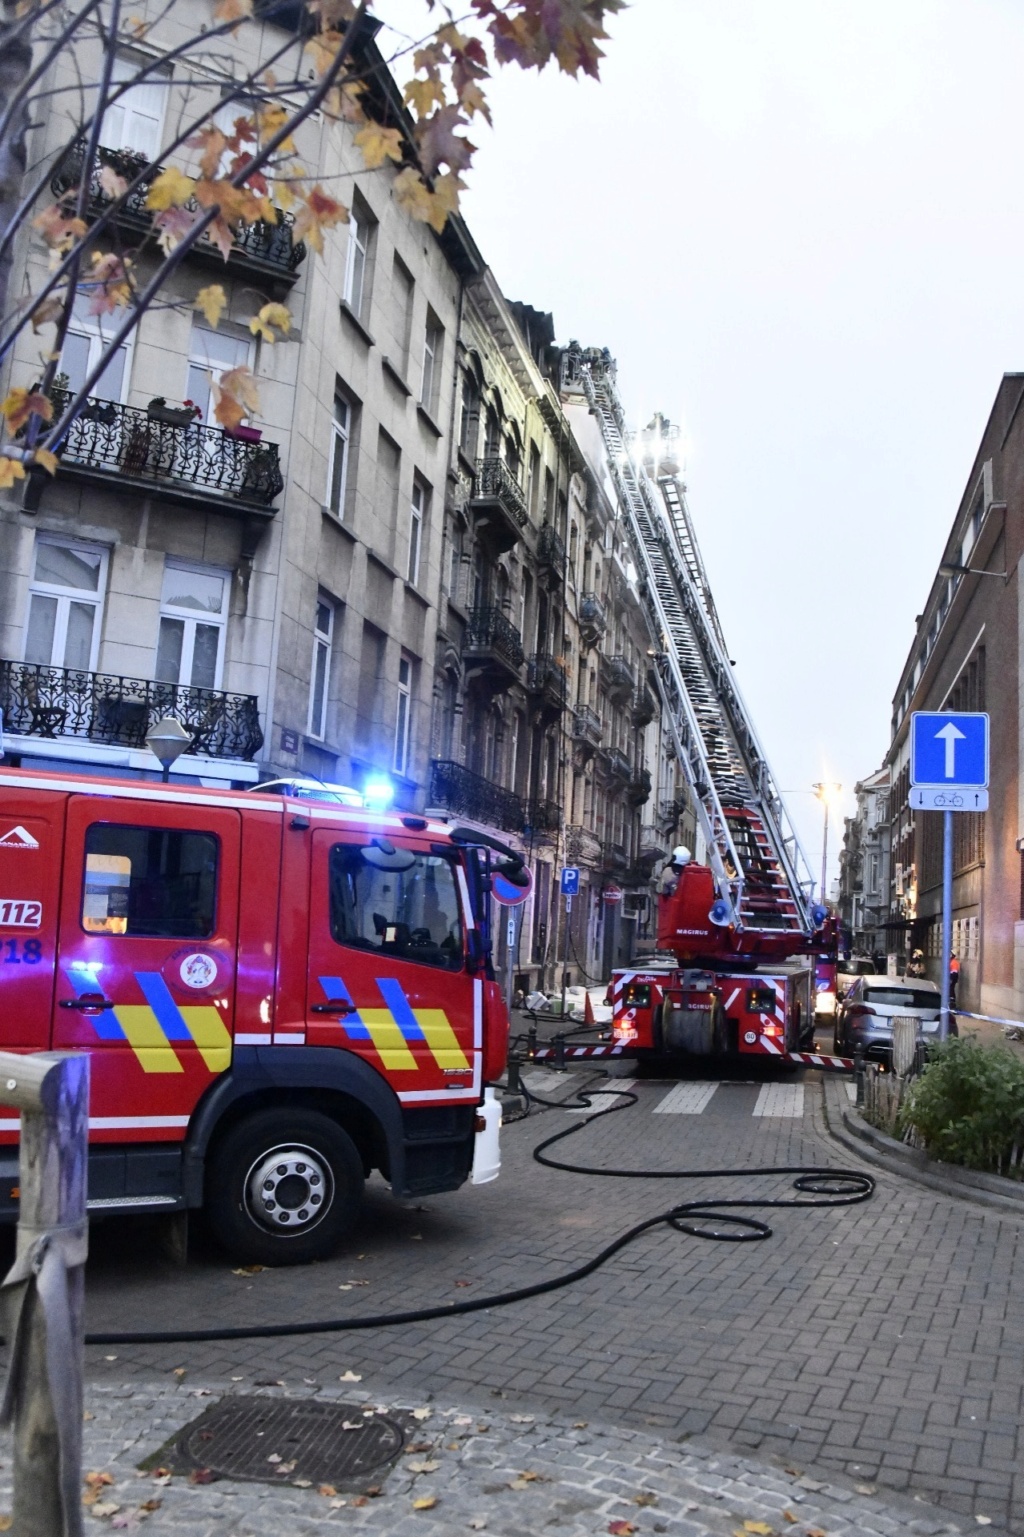 Un immeuble de 4 étages déclaré inhabitable à la suite d’un incendie à St-Gilles (20-22-2021 + photos) Whats304